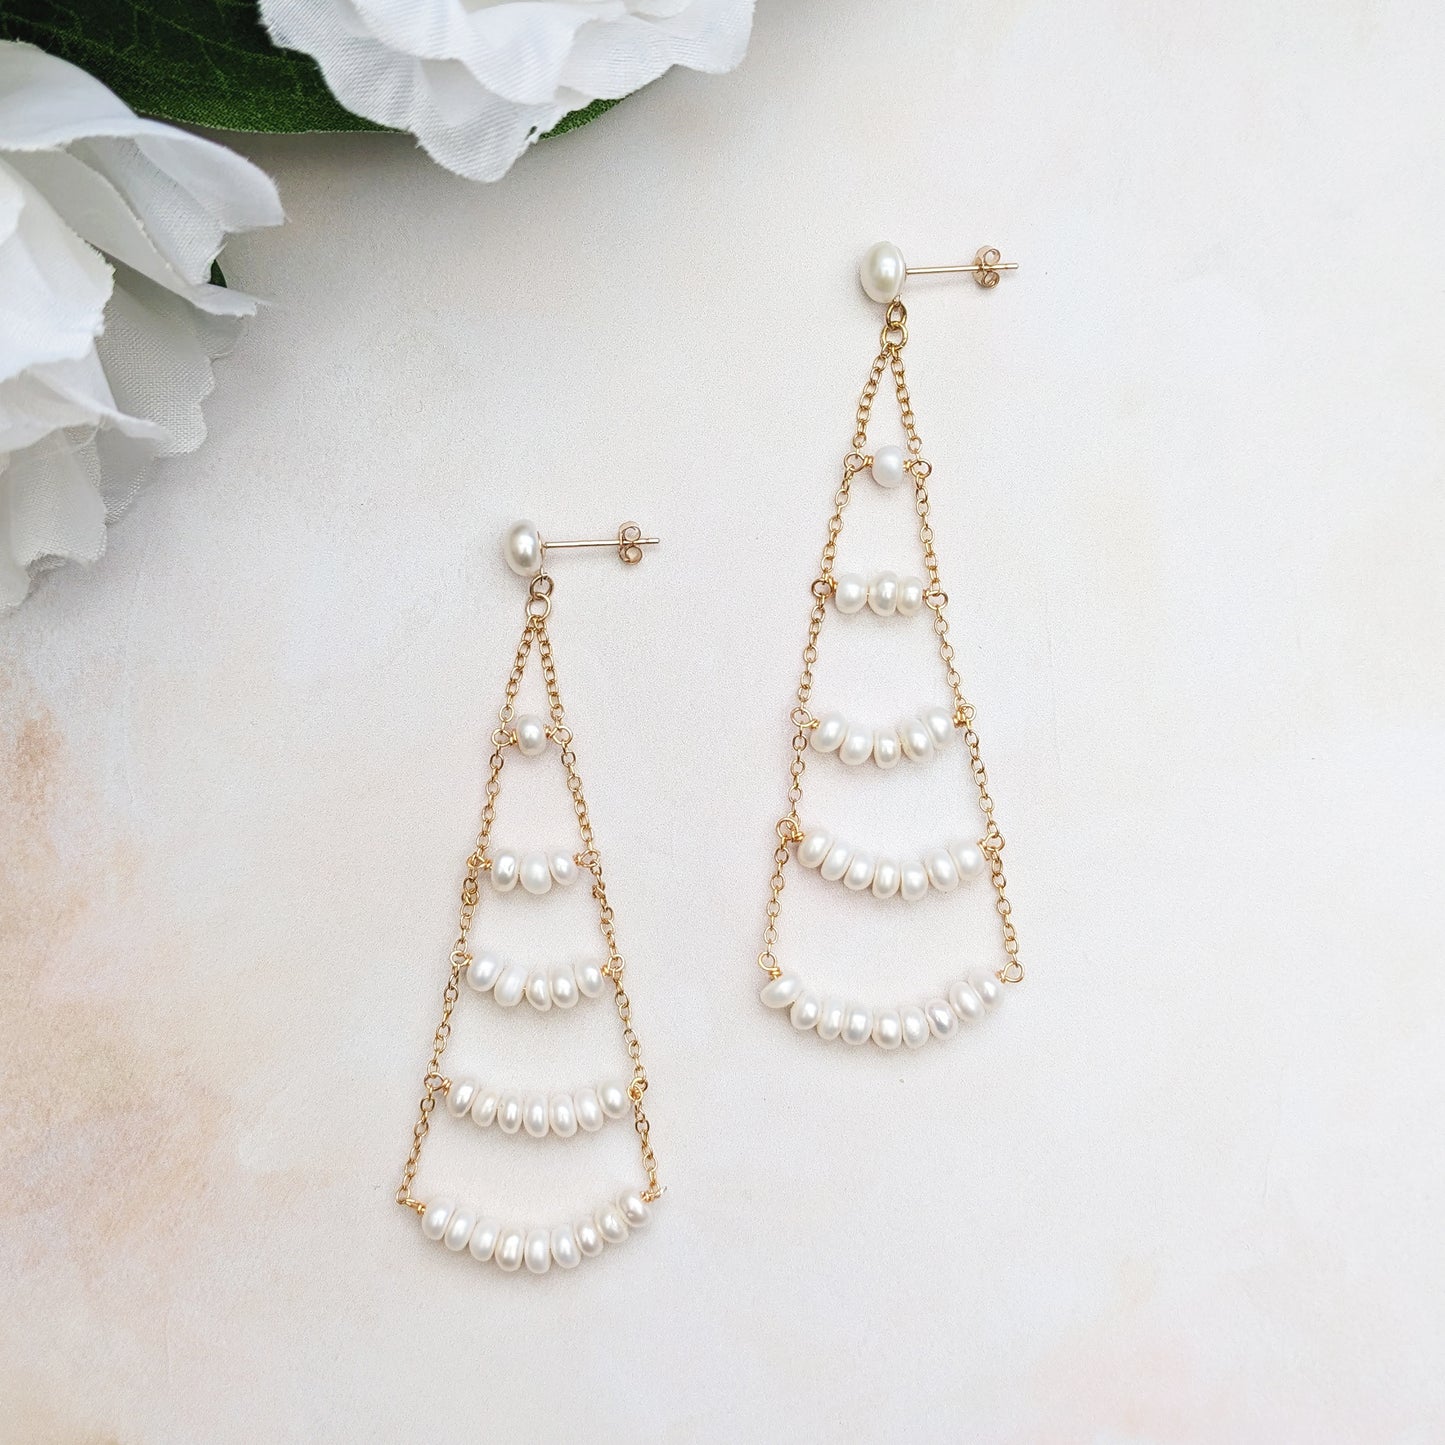 Statement gold pearl chandelier earrings - Susie Warner